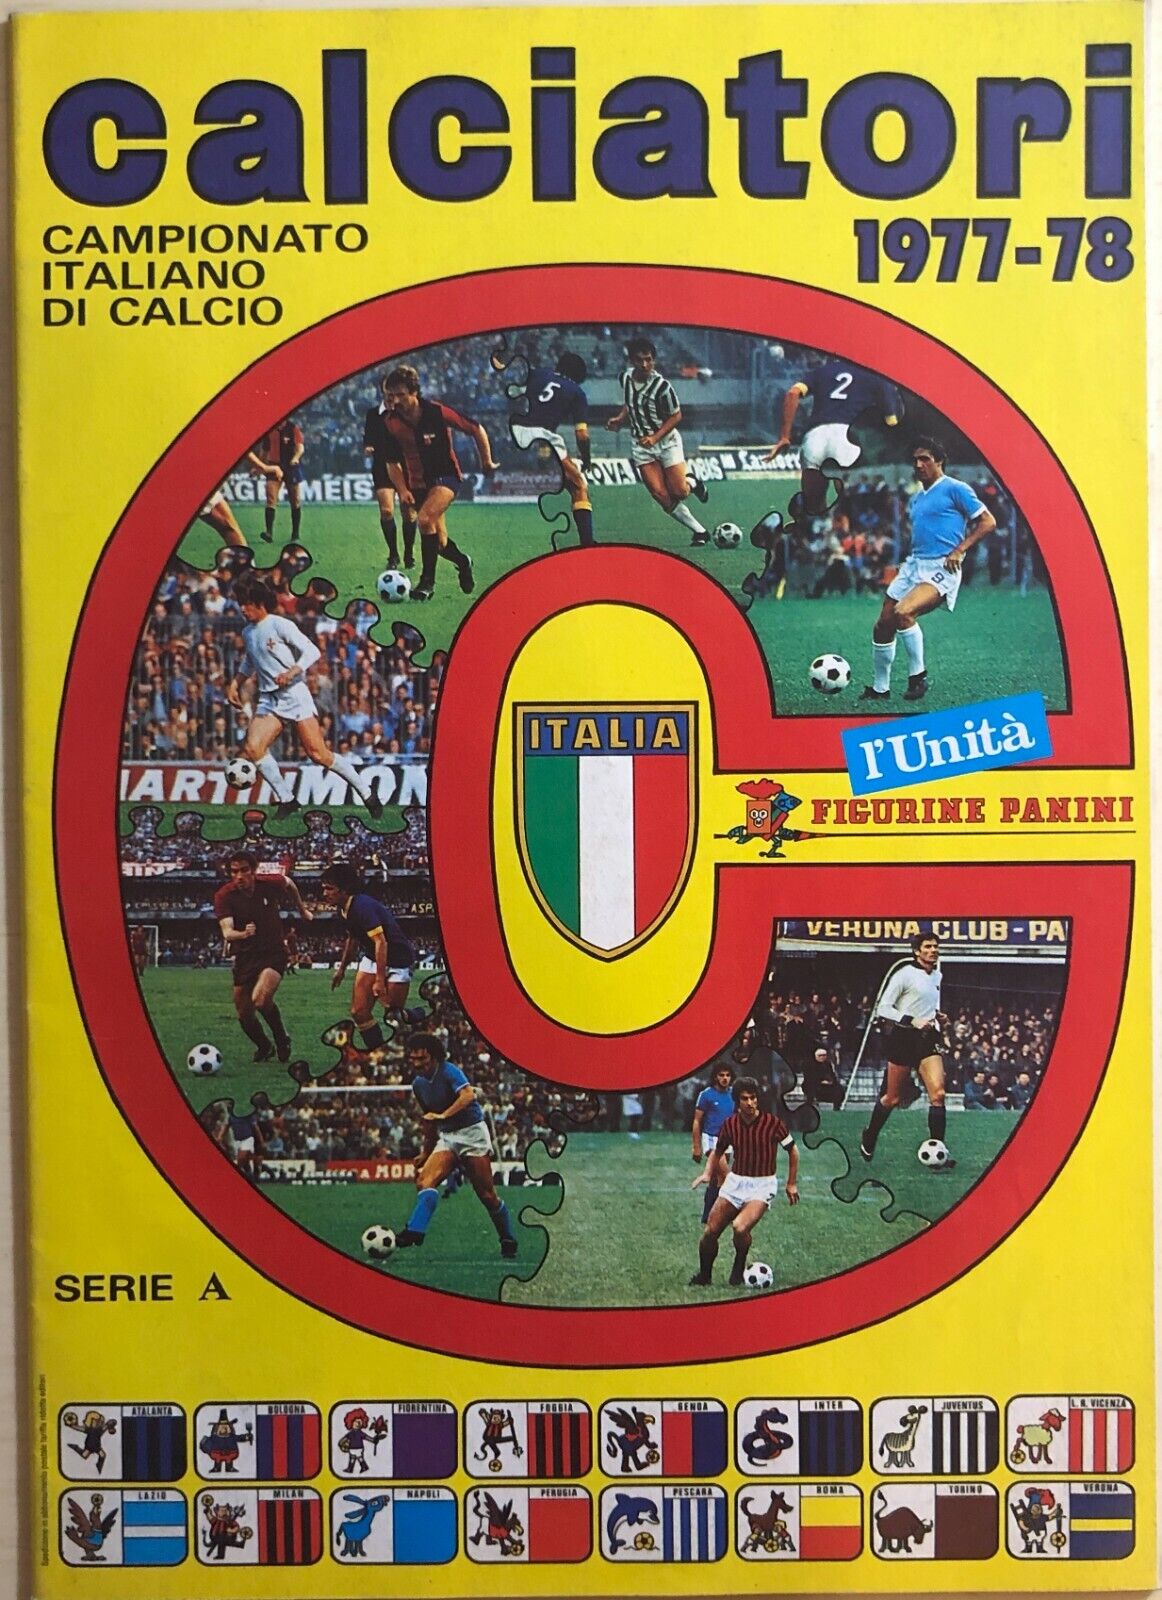 Ristampa album Calciatori Panini Serie A 1977-78